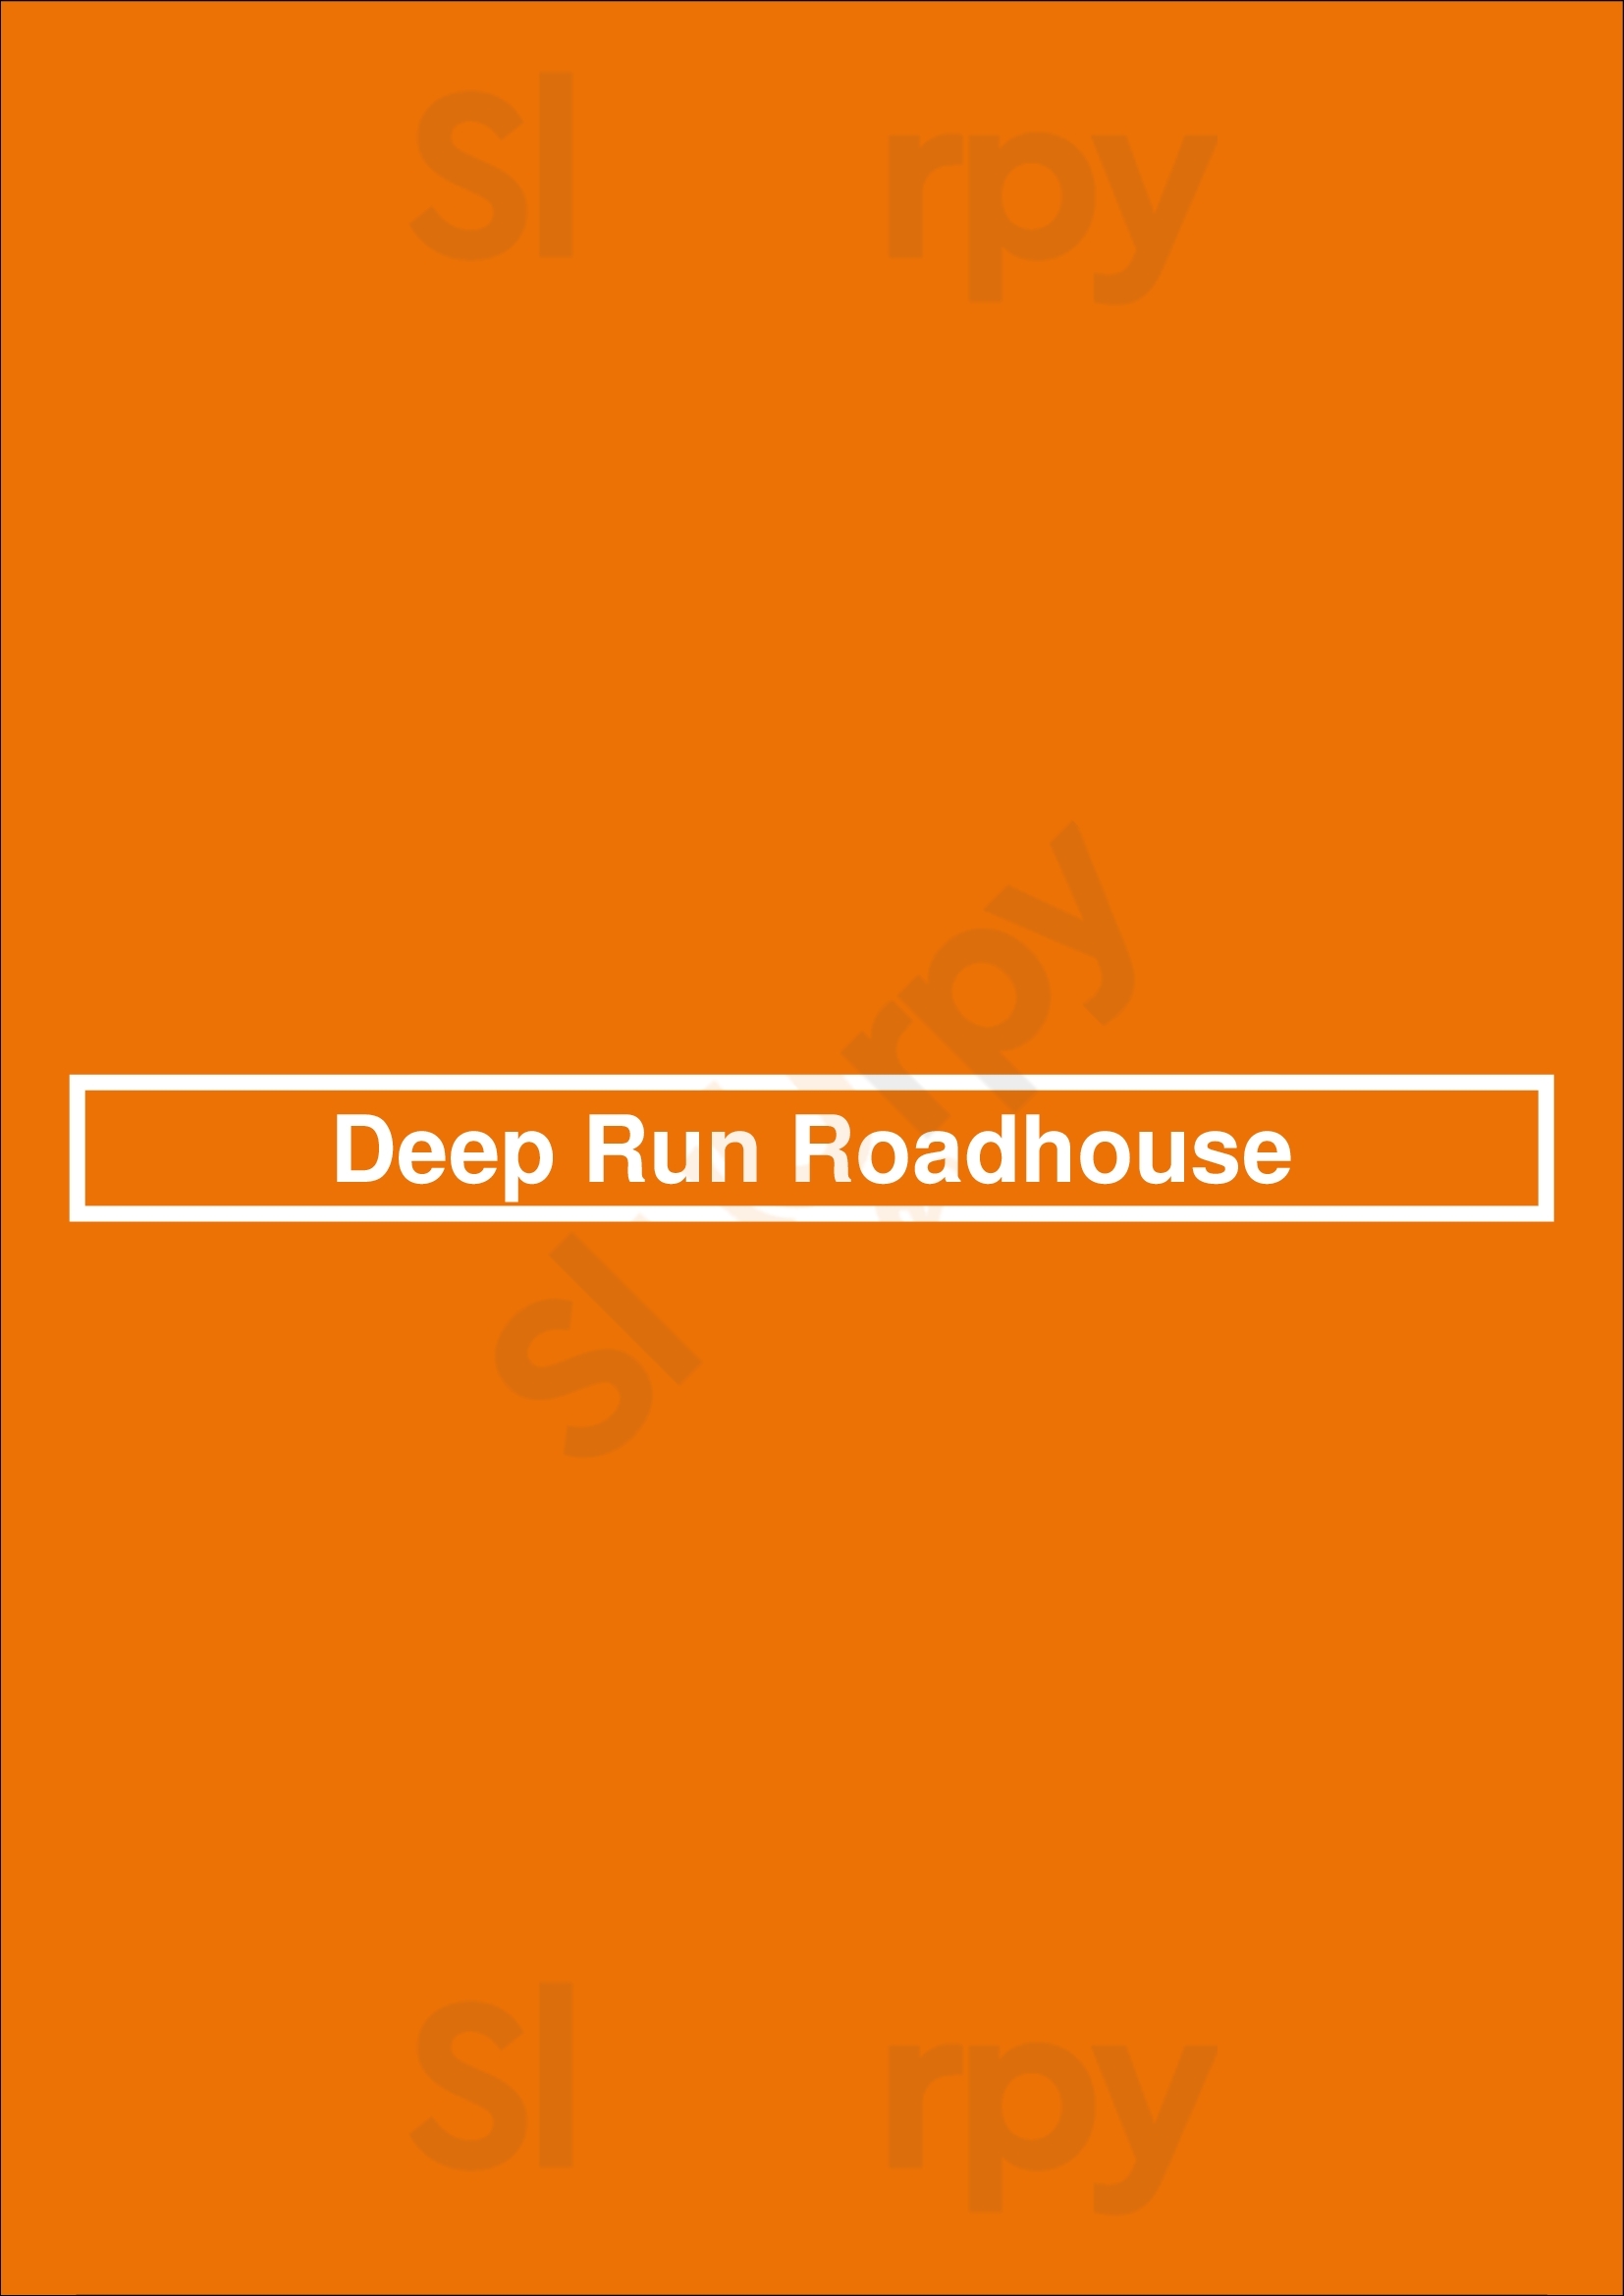 Deep Run Roadhouse Richmond Menu - 1